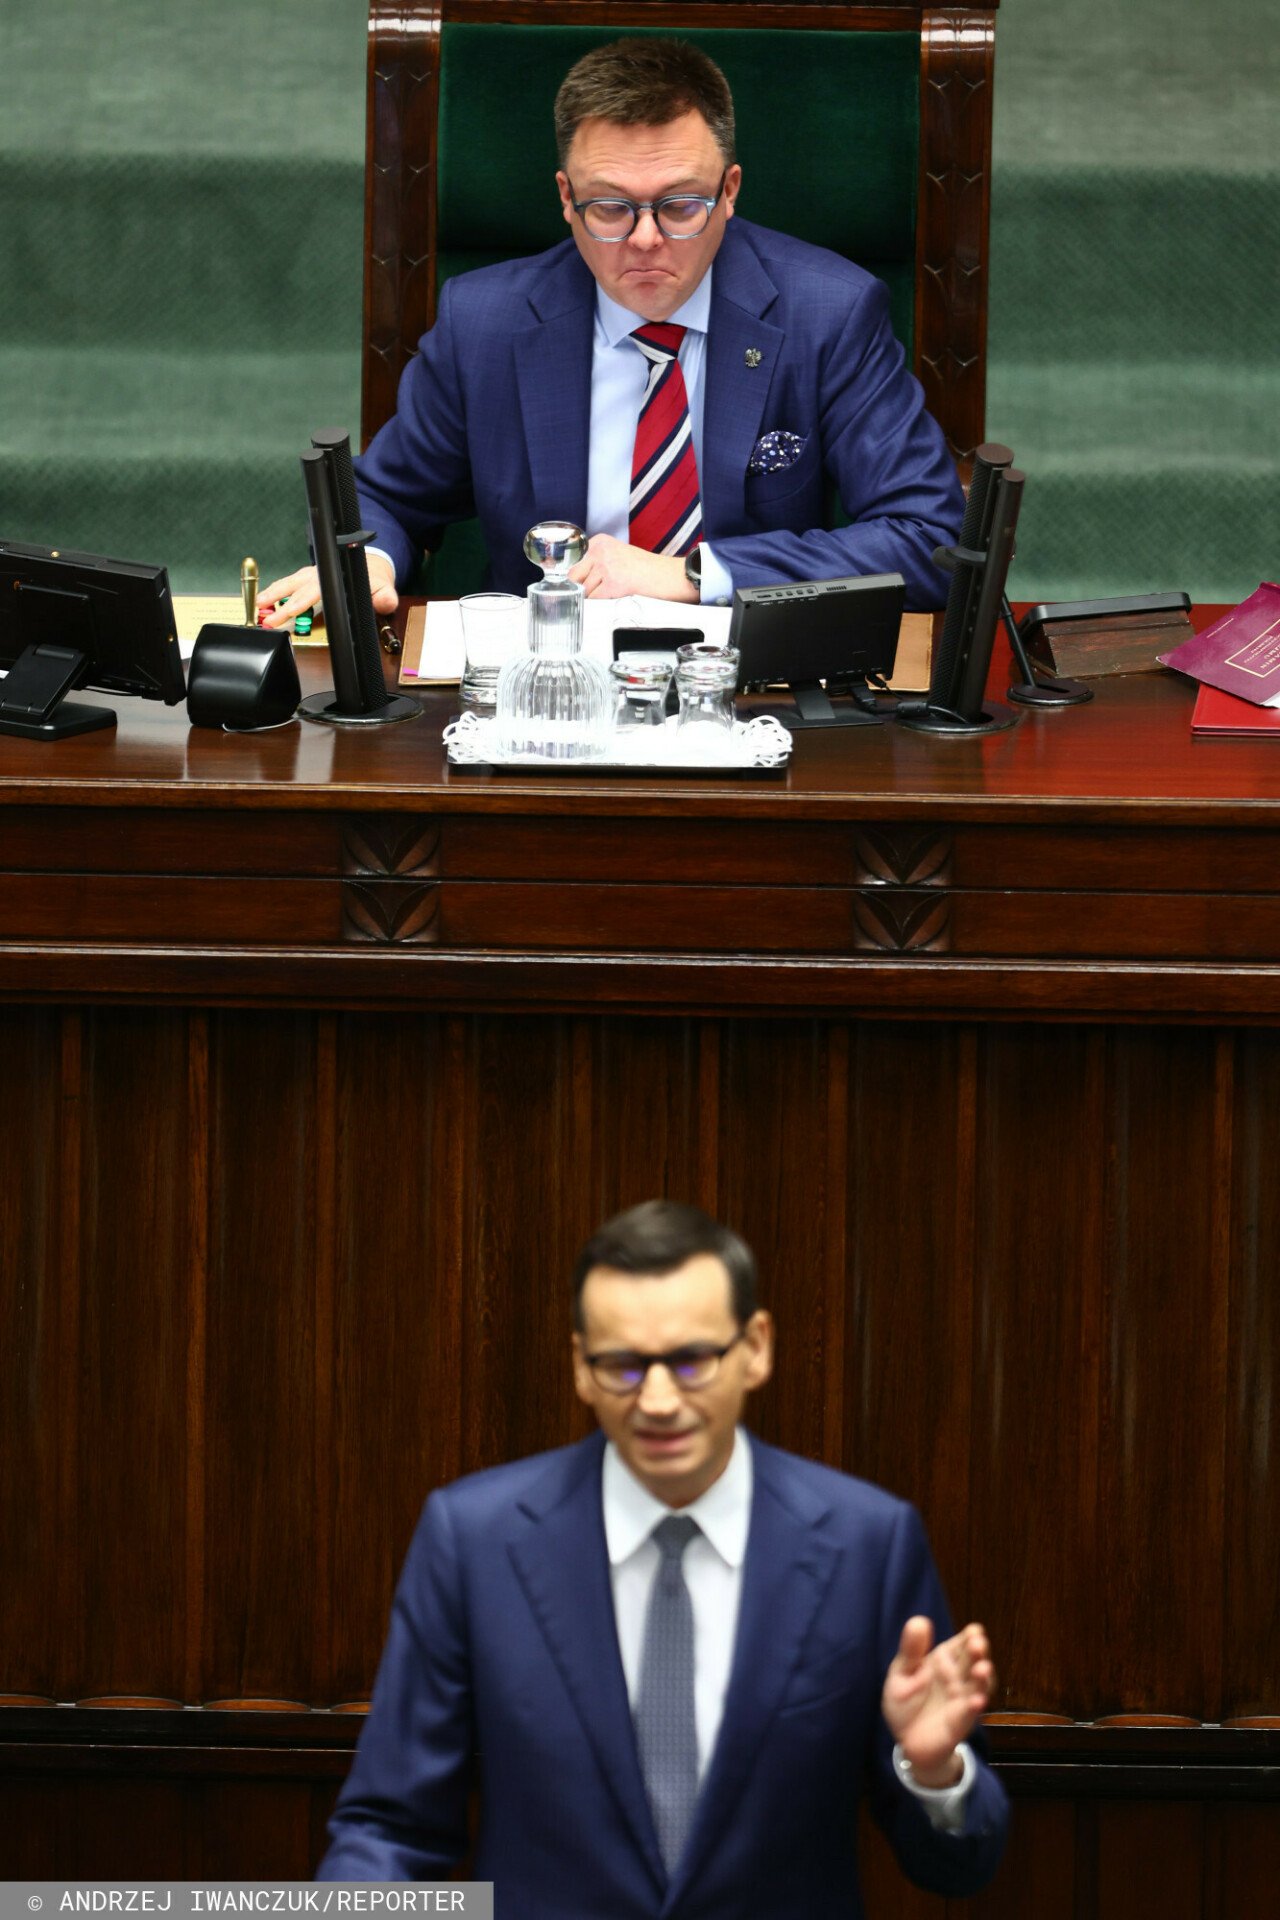 Mateusz Morawiecki z granatowym garniturze przemawia, obok Szymon Hołownia w garnatowym garniturze śmieje się